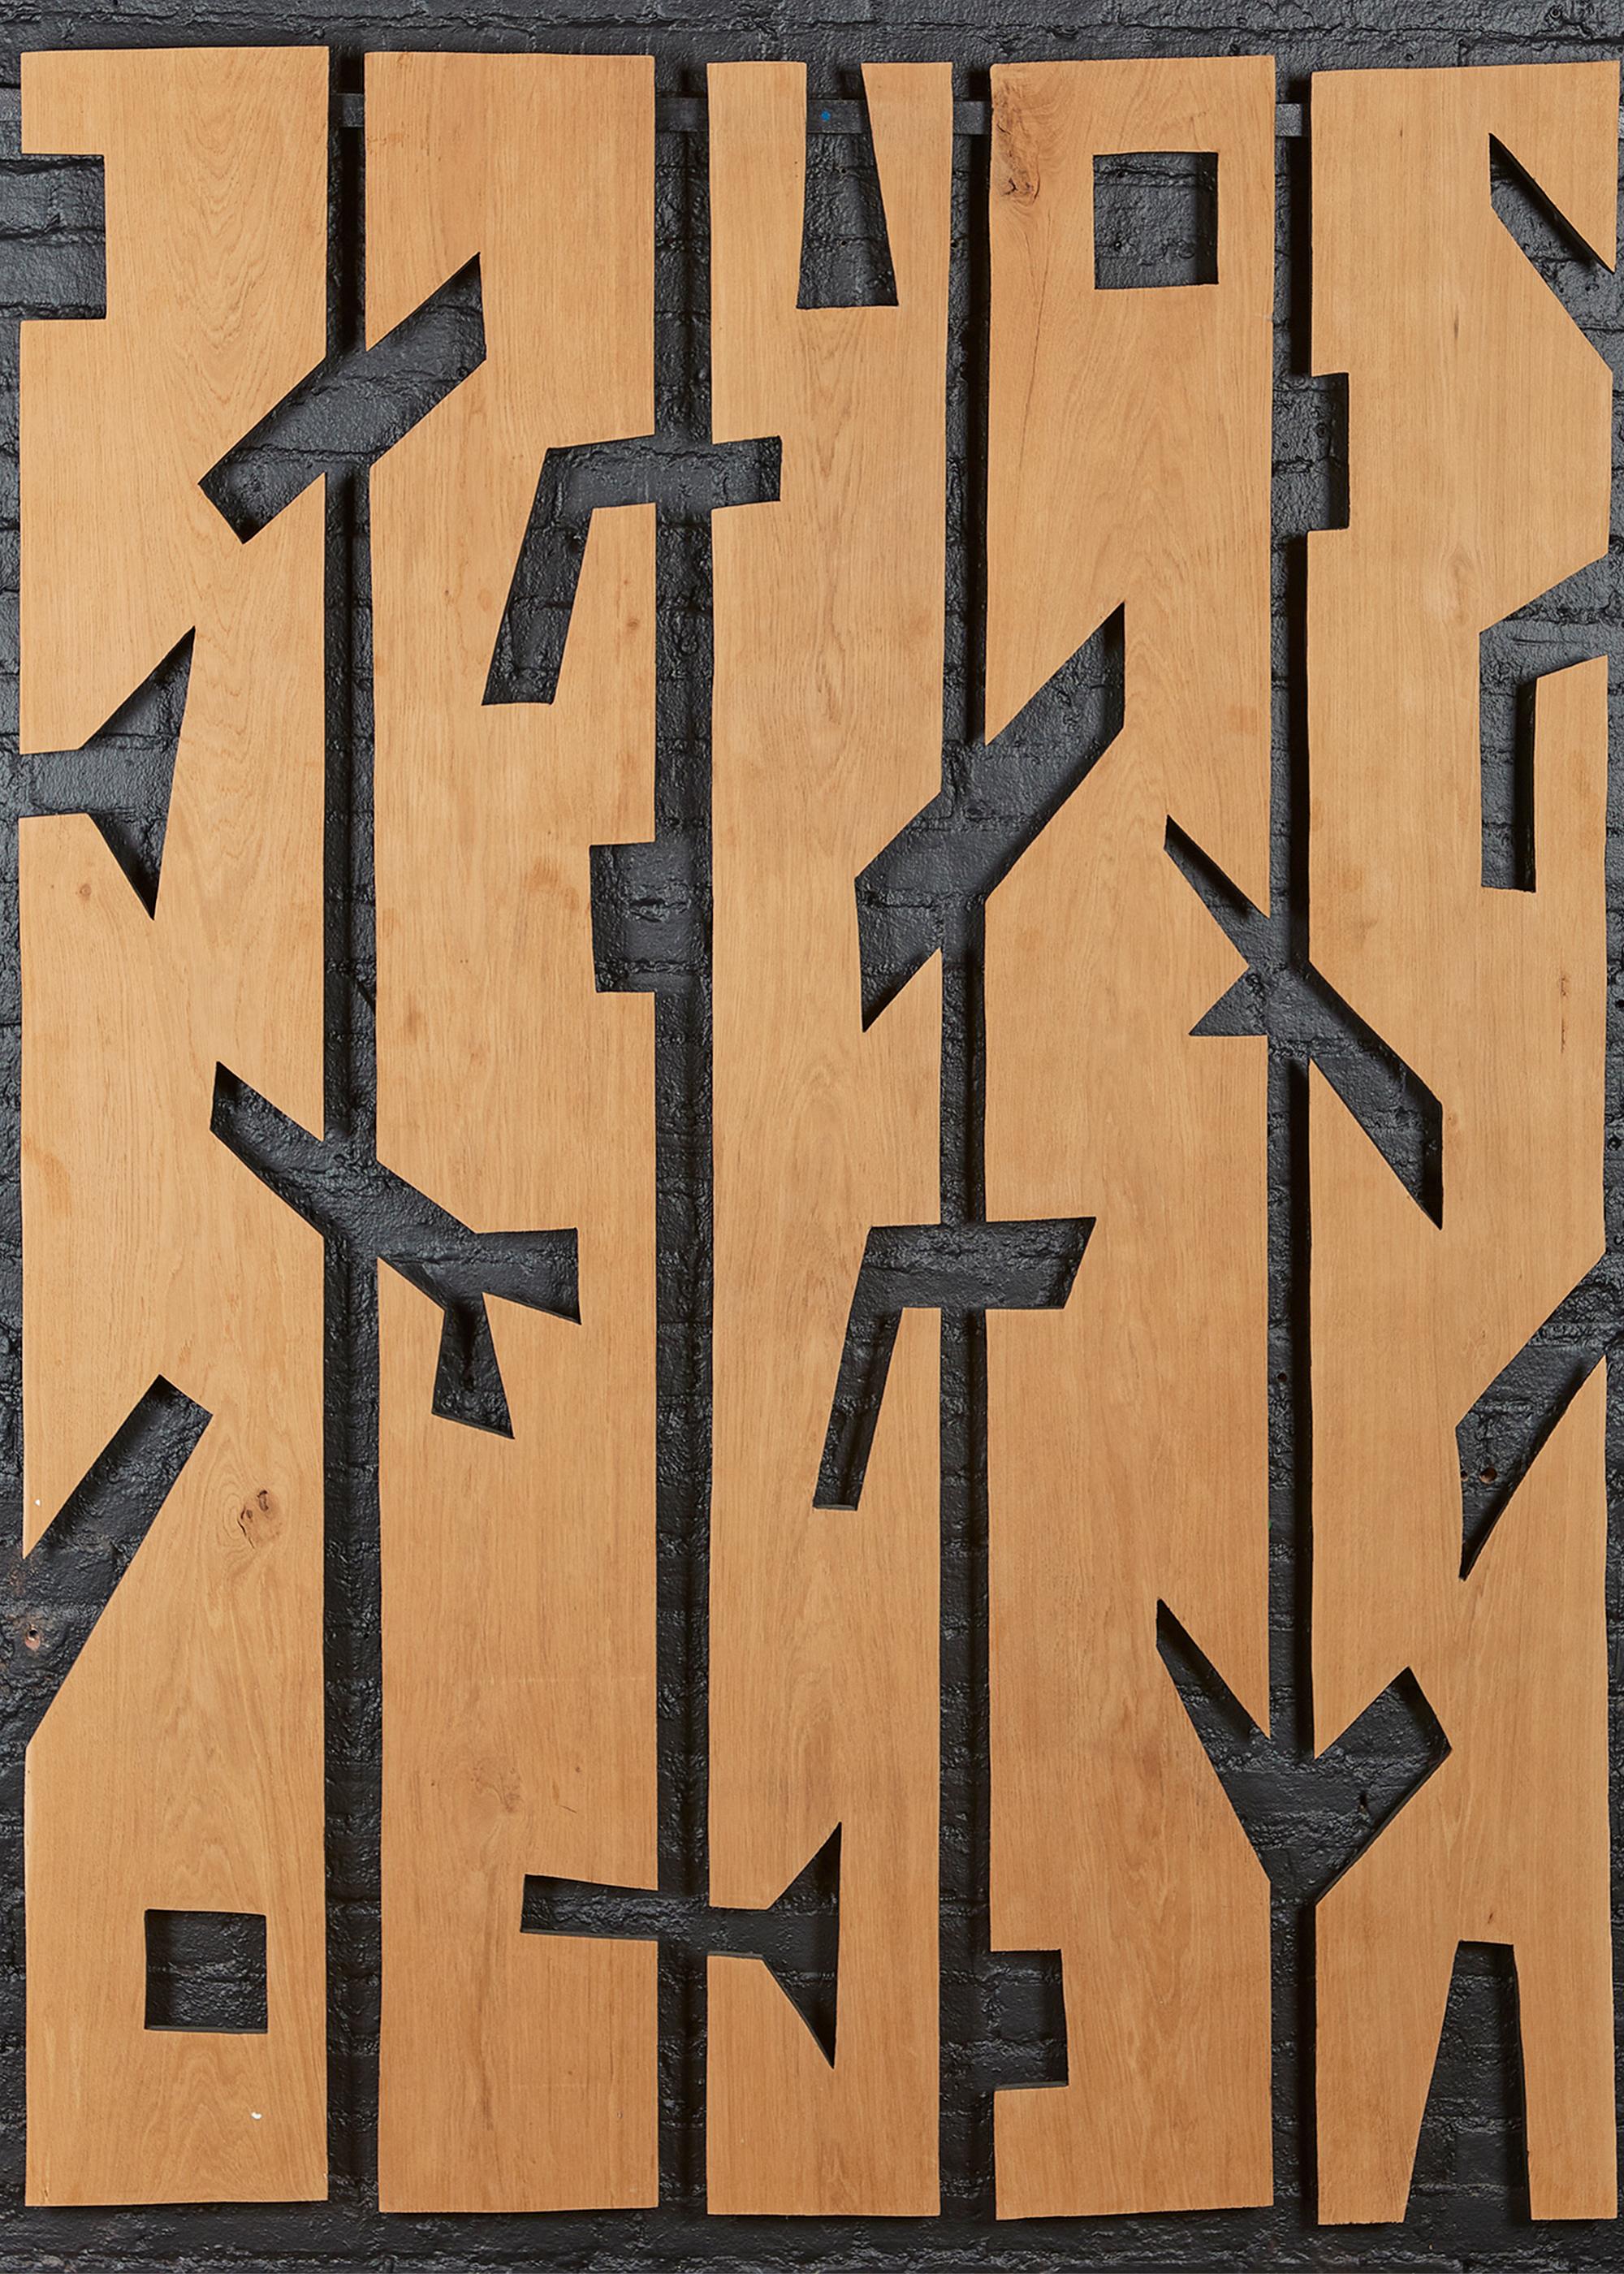 Un ensemble expressif de cinq grands panneaux de bois, qui privilégient l'espace négatif à l'ornementation. Comme pour ses totems, l'artiste français Franck Evennou confère à ses sujets naturels un caractère ludique et subversif qui lui est